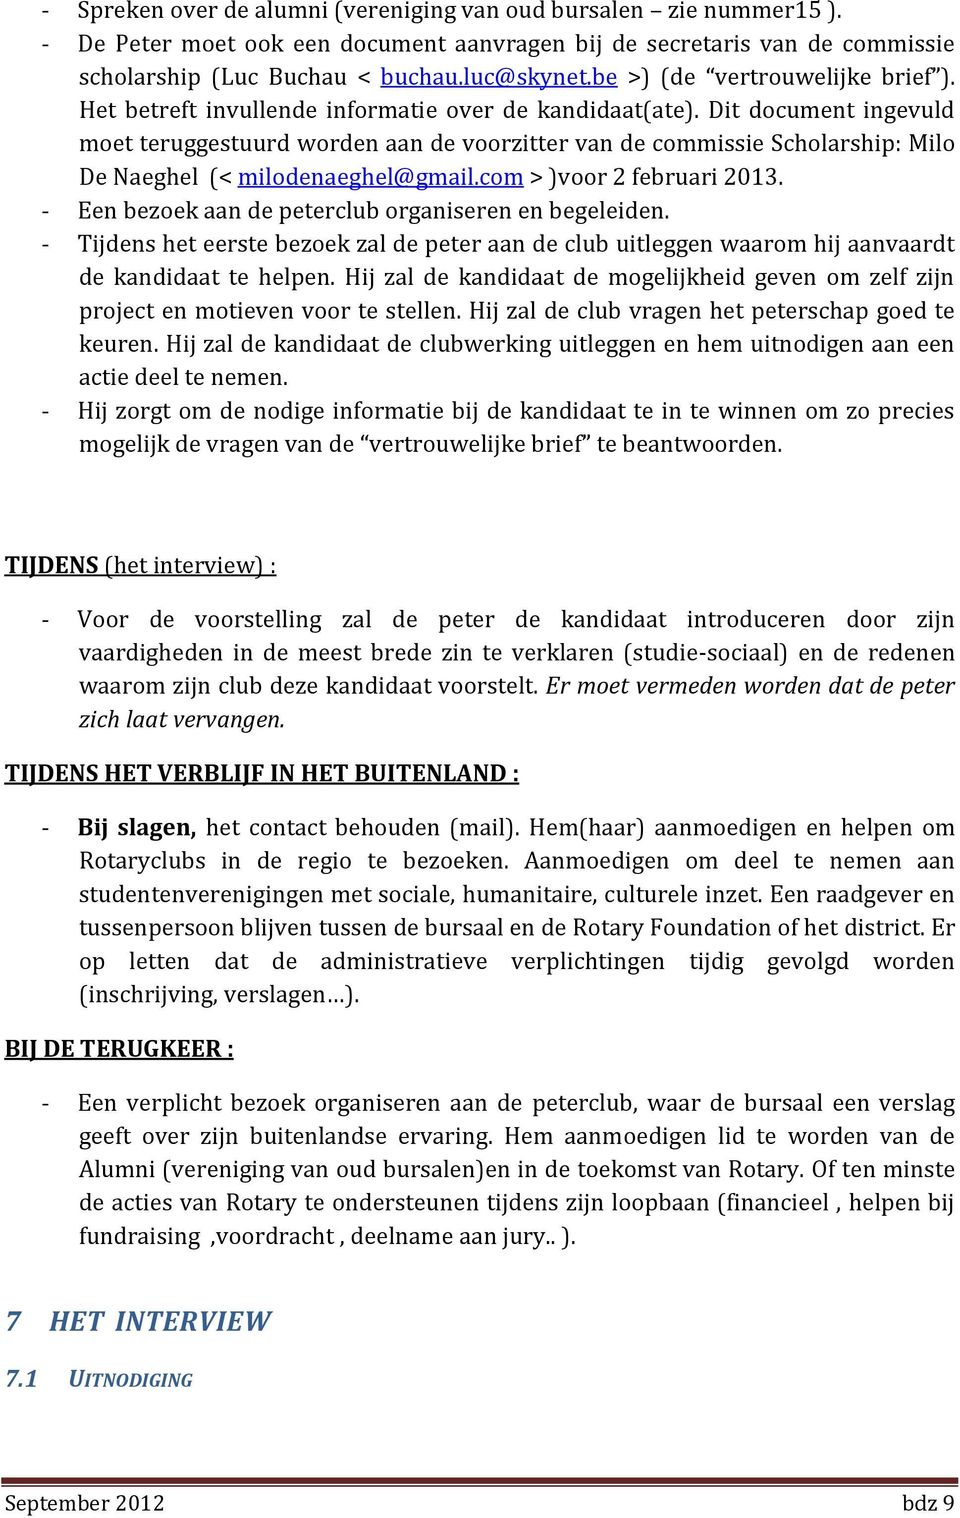 Dit document ingevuld moet teruggestuurd worden aan de voorzitter van de commissie Scholarship: Milo De Naeghel (< milodenaeghel@gmail.com > )voor 2 februari 2013.